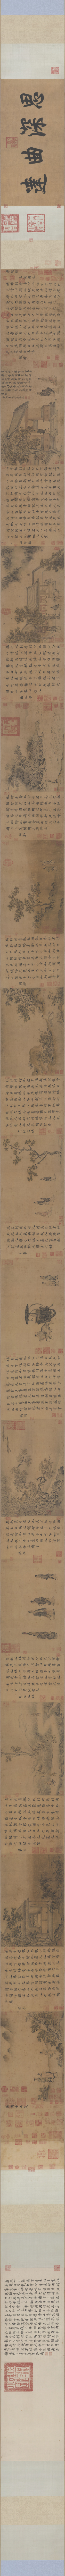 B5043019《唐风图(全卷)》宋代画家马和之高清作品 宋代-第1张